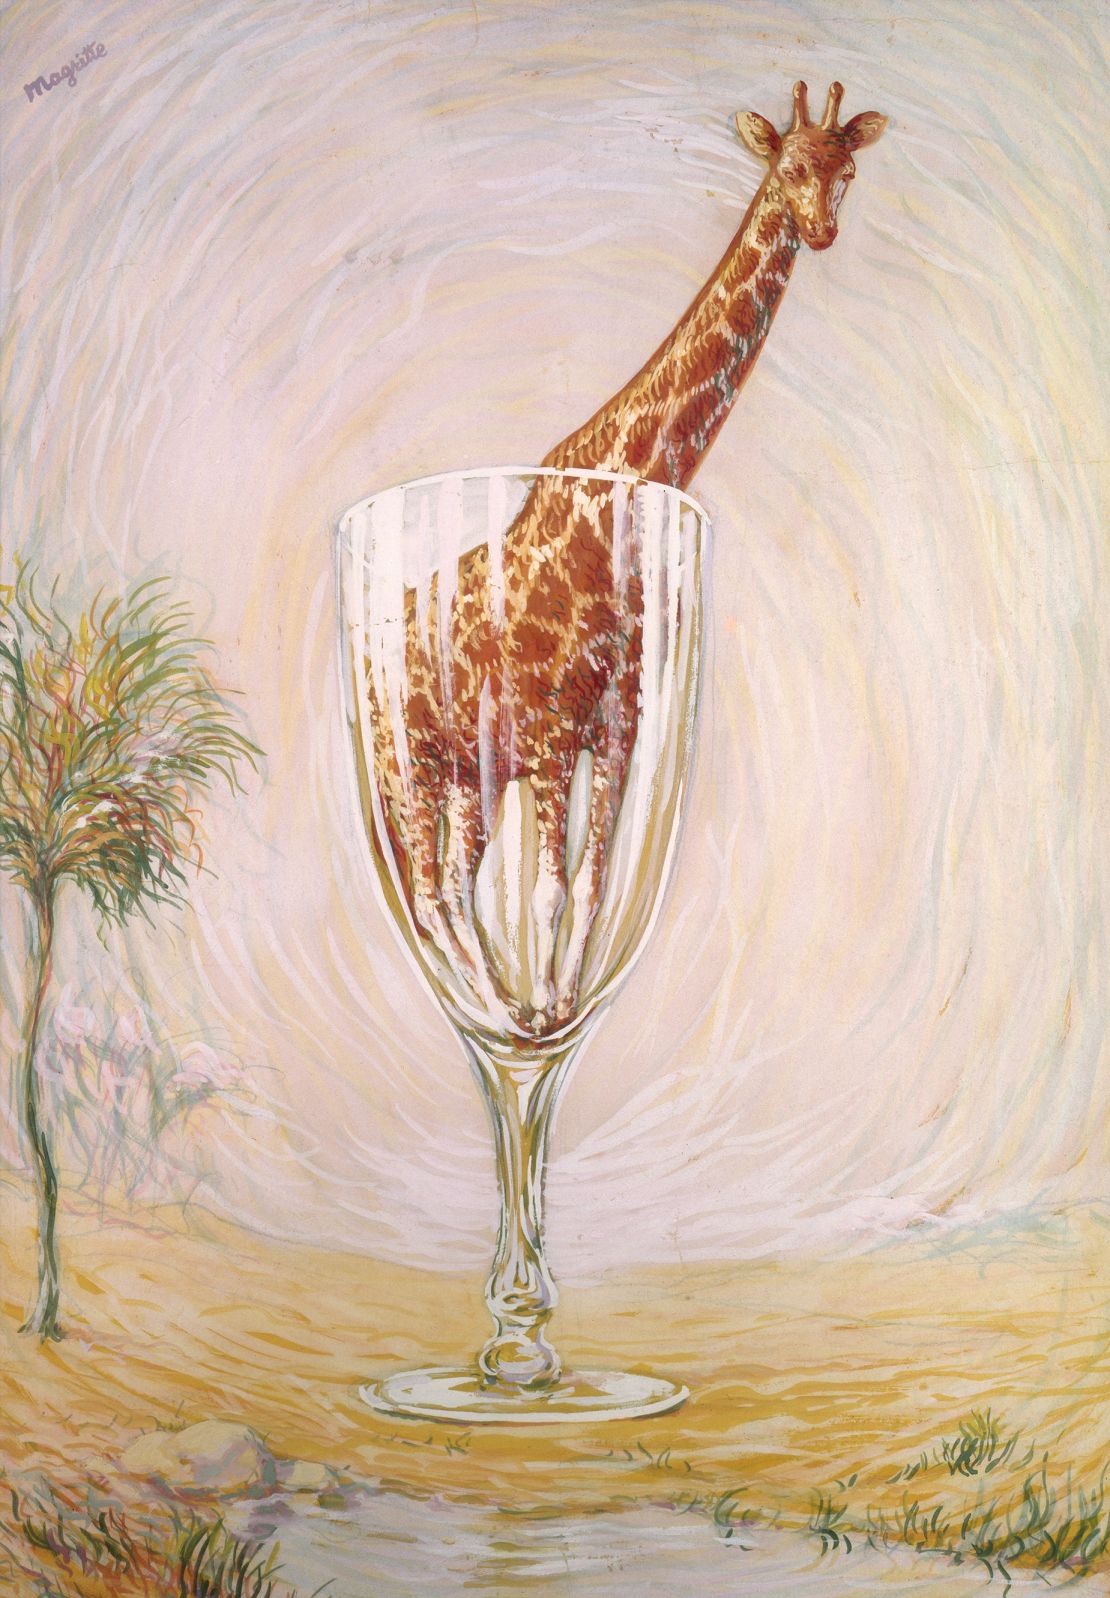 "Le Bain de Cristal" ("The cut glass bath") by René Magritte, painted in 1946.